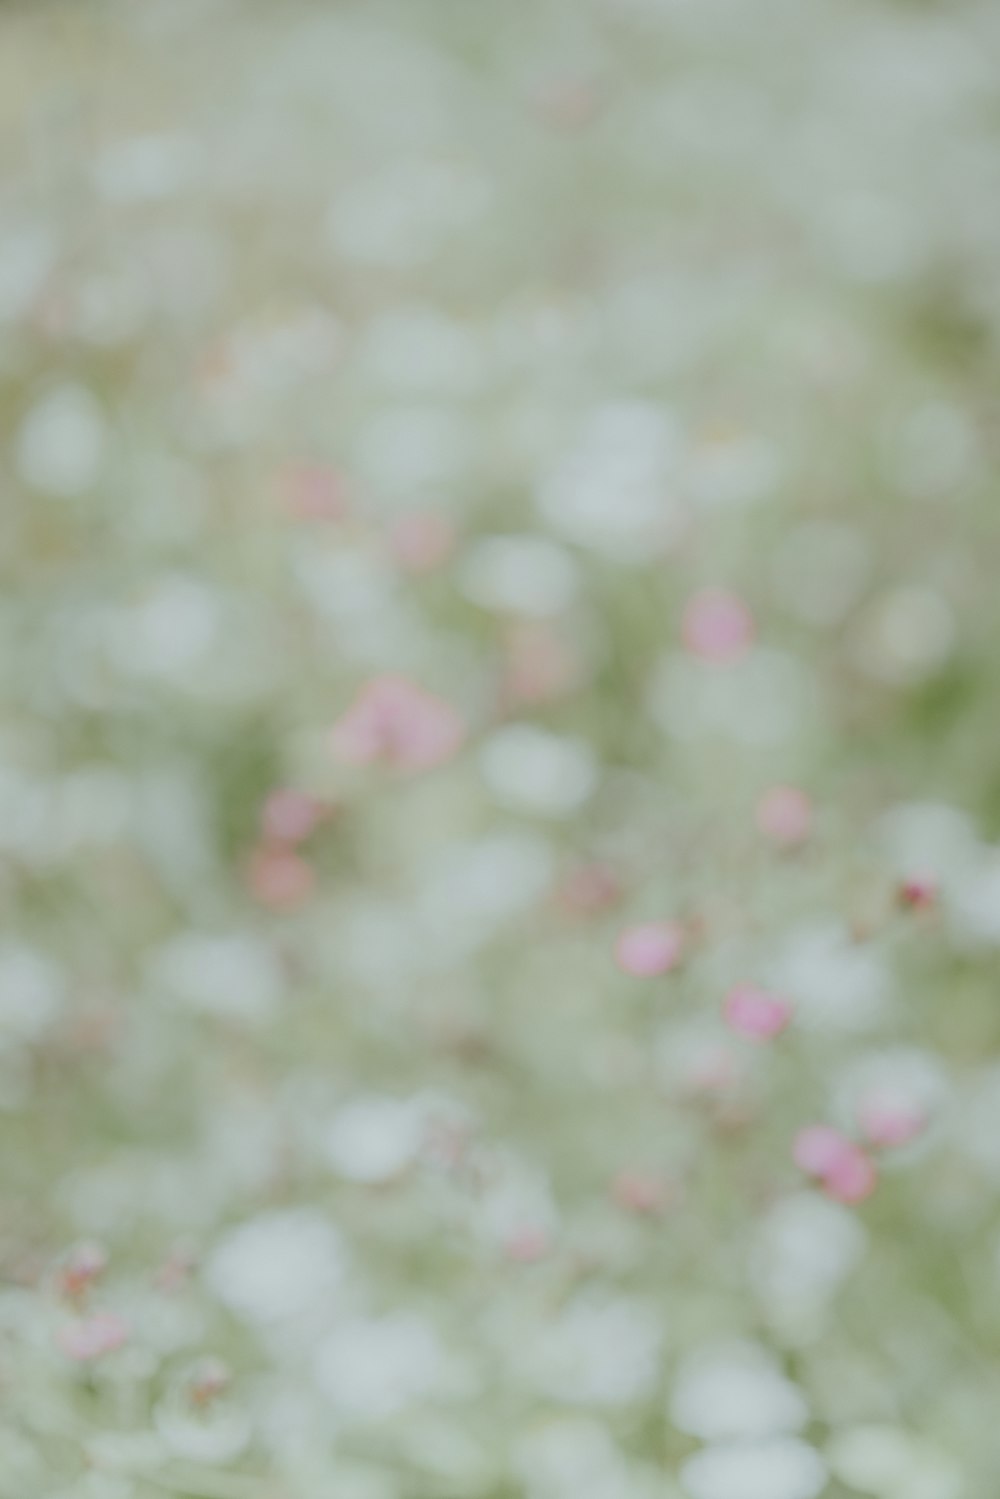 Ein weißer Teddybär, der mitten in einem Blumenfeld sitzt